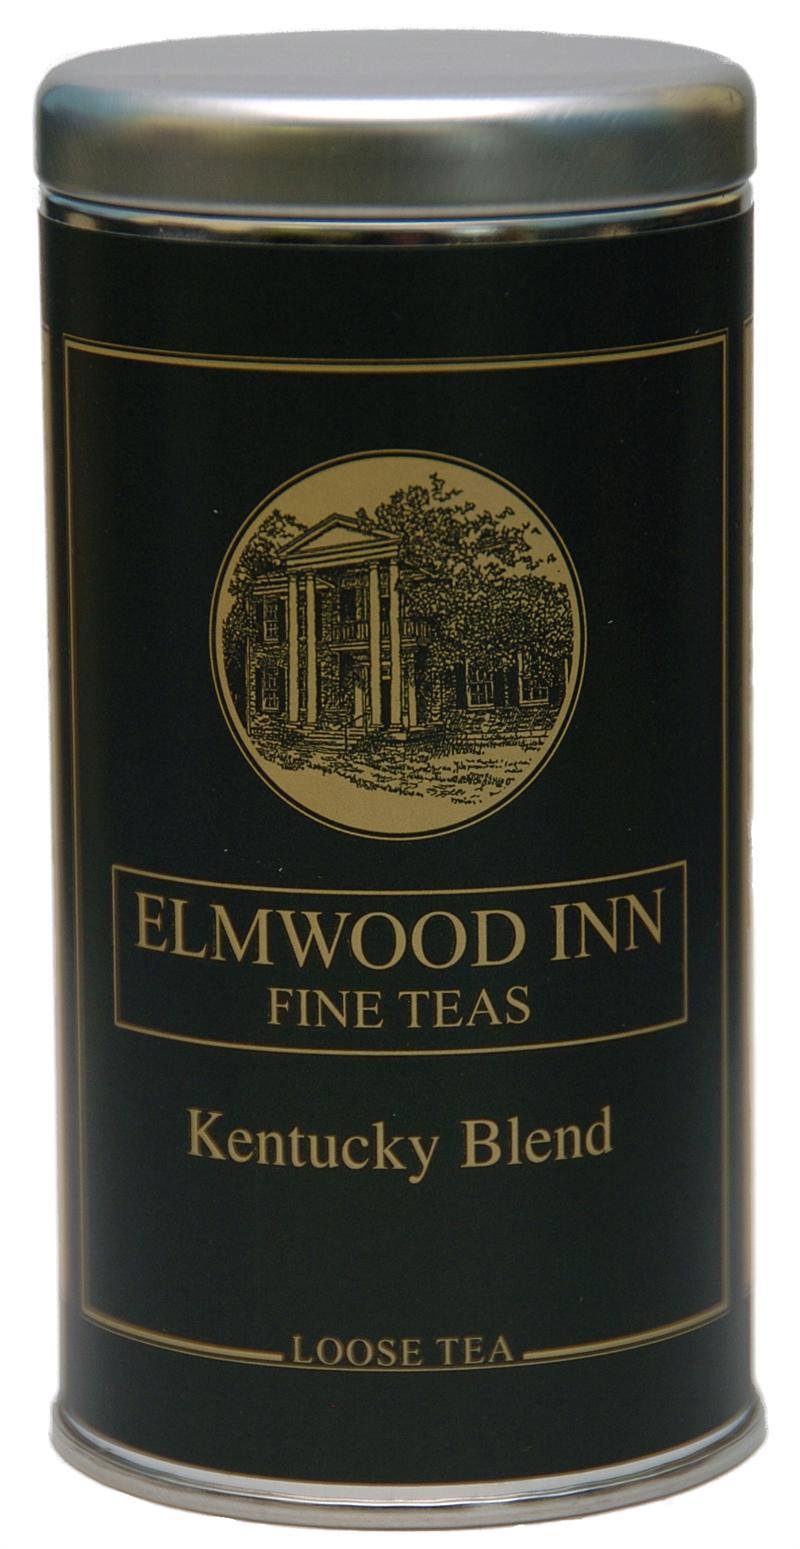 Kentucky Blend Black Tea